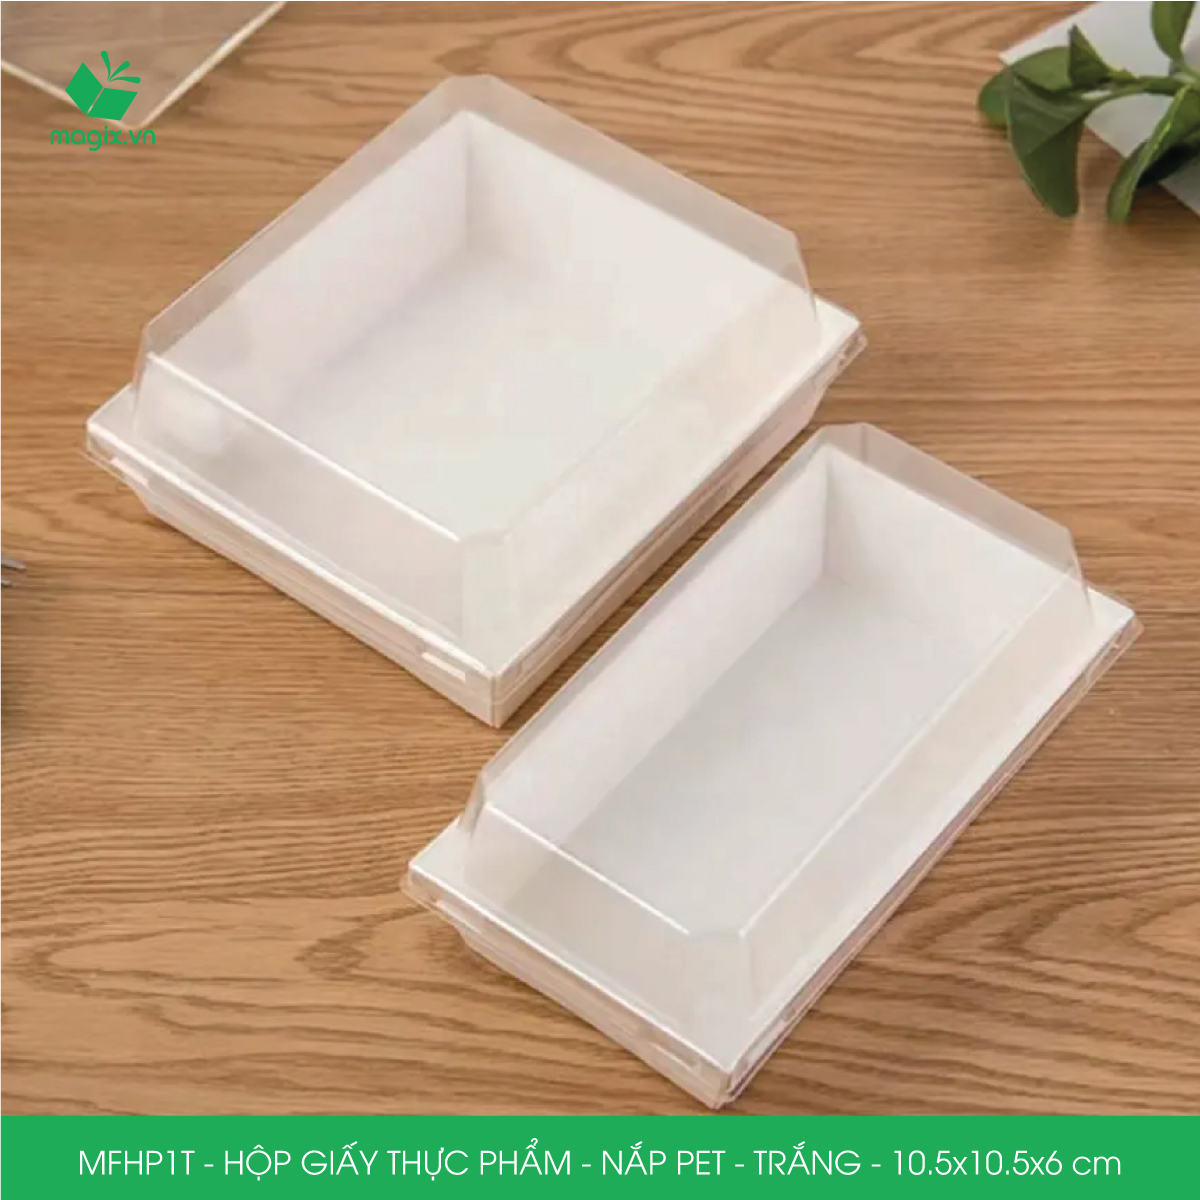 Hình ảnh MFHP1T - 10.5x10.5x6 cm - 25 hộp giấy thực phẩm màu trắng nắp Pet, hộp giấy vuông đựng thức ăn, hộp bánh nắp trong